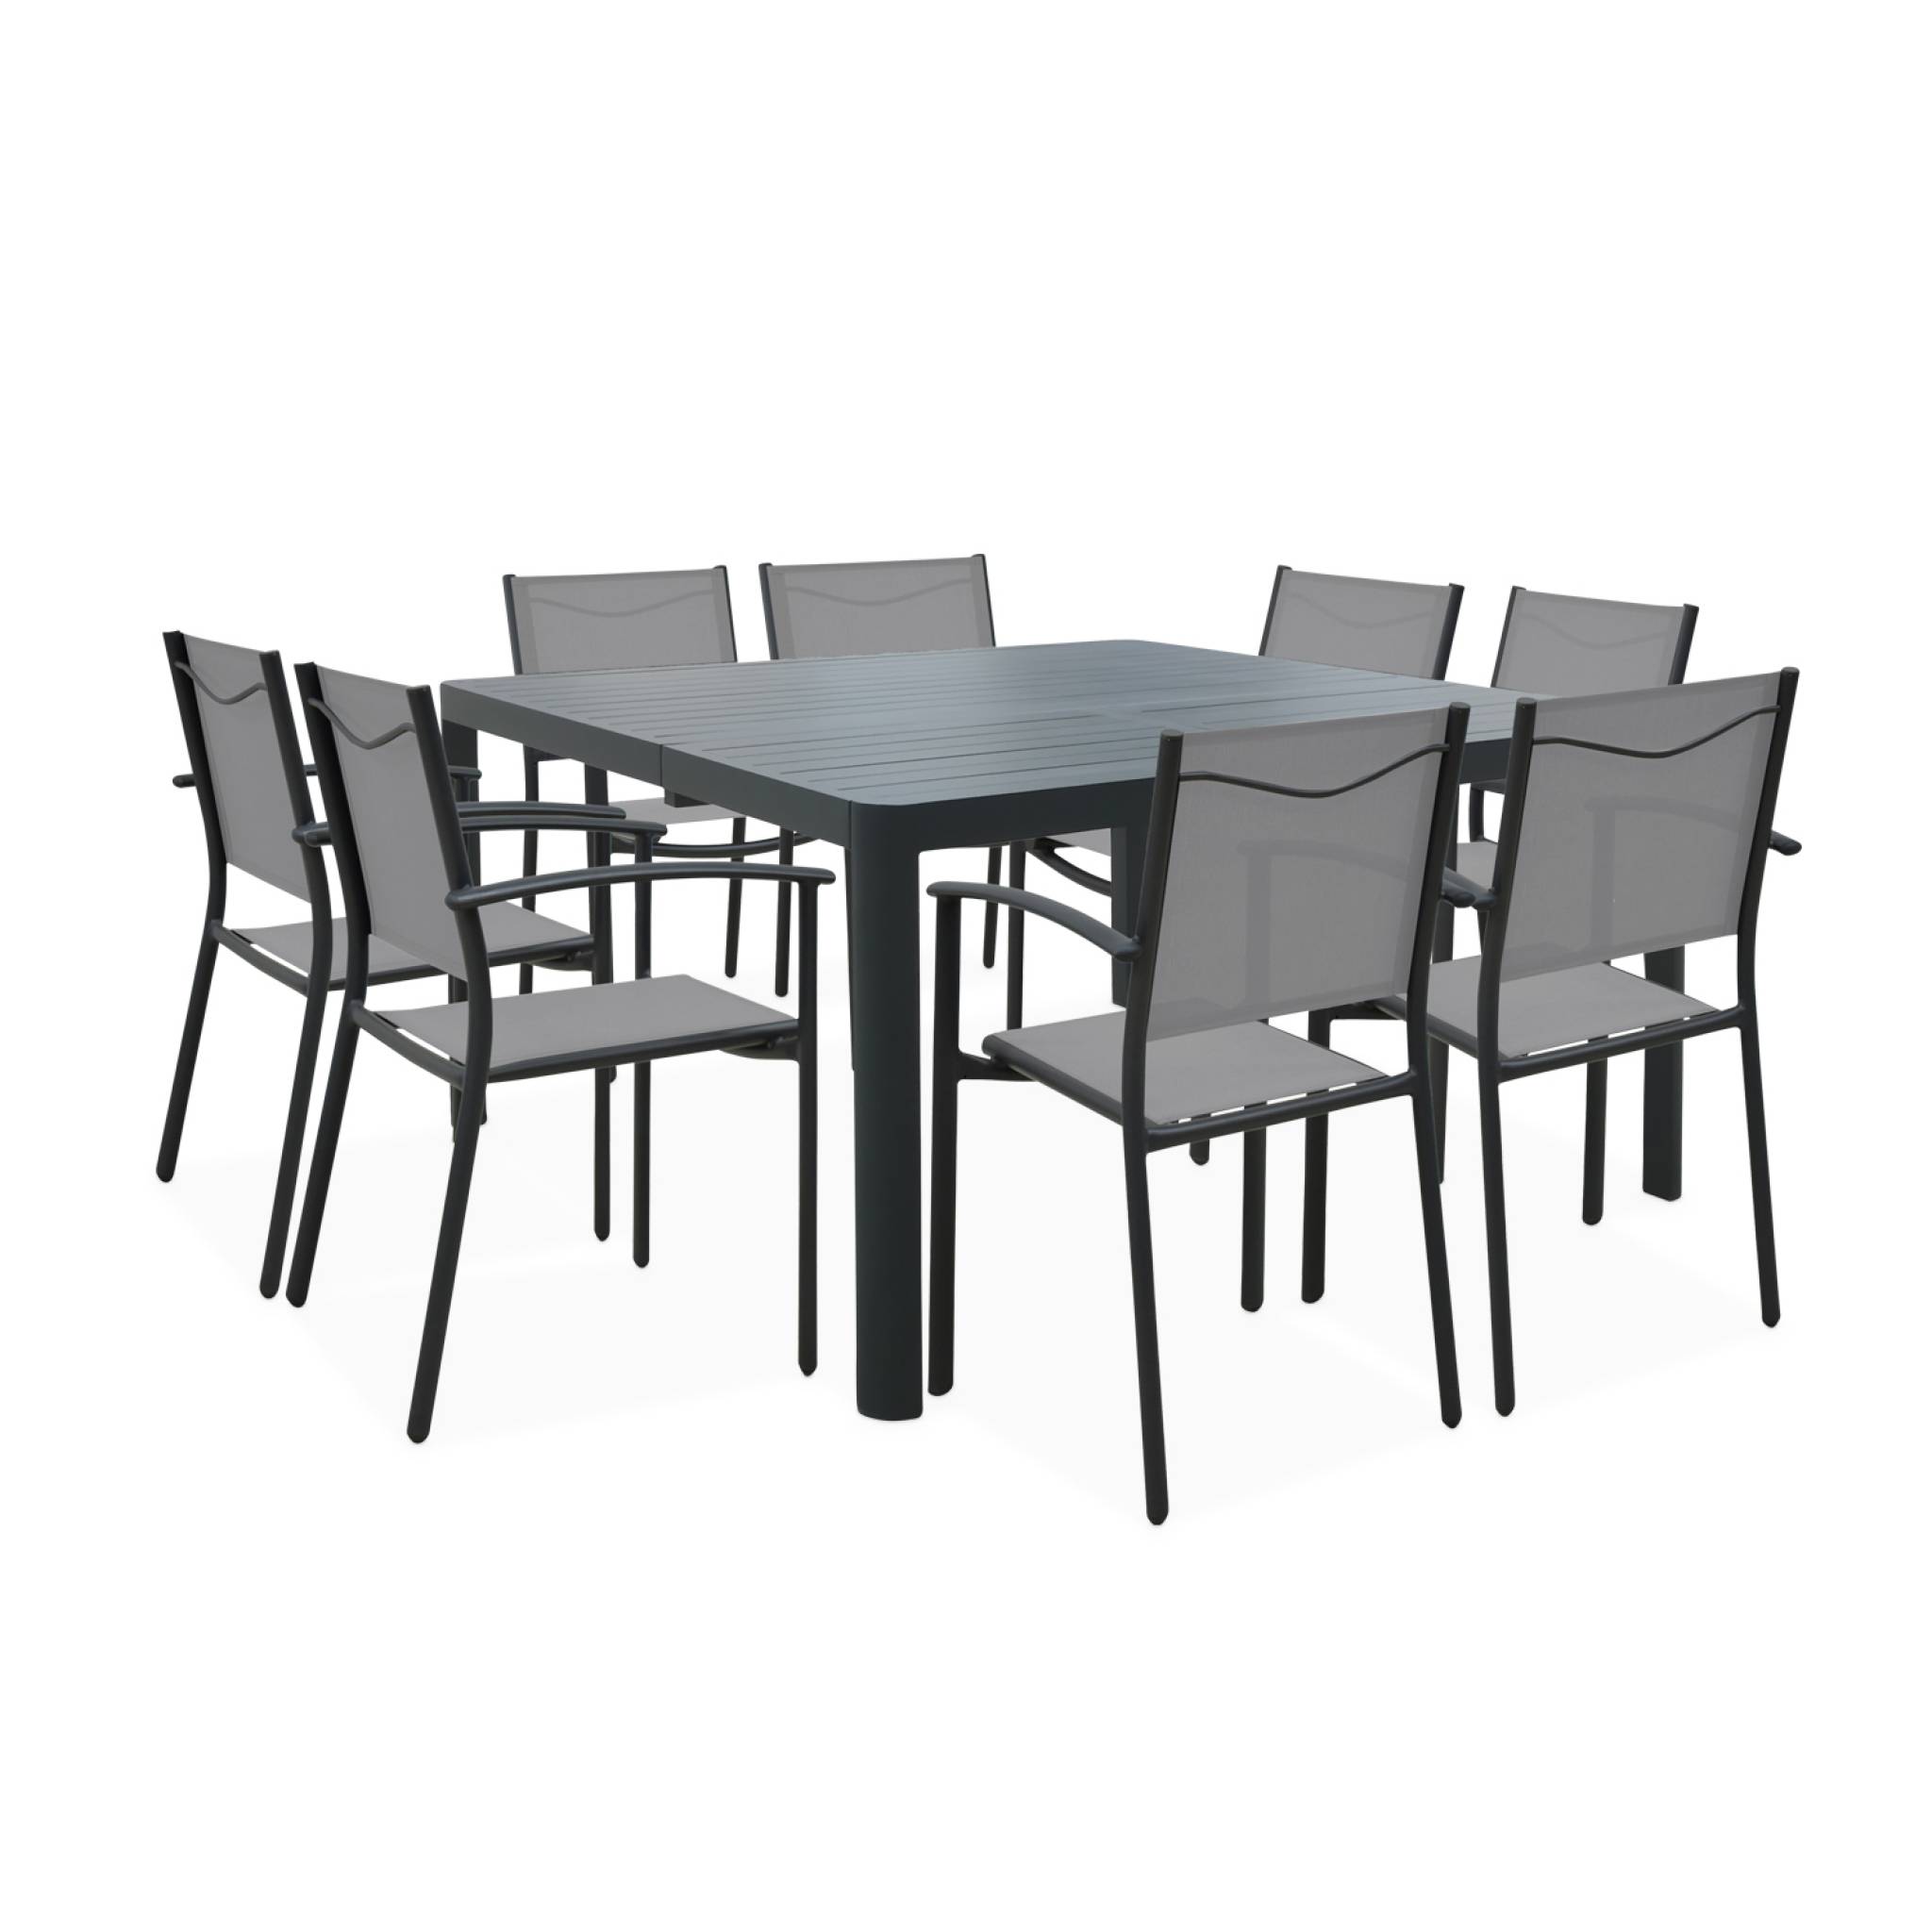 Salon de jardin anthracite et gris en aluminium table et 8 fauteuils